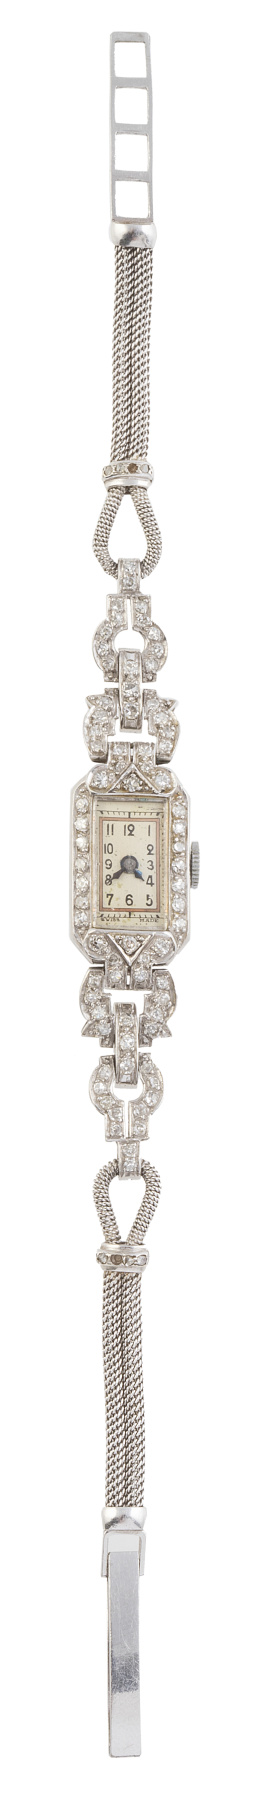 118.  Reloj de pulsera para señora Art-Decó de platino y  brillan